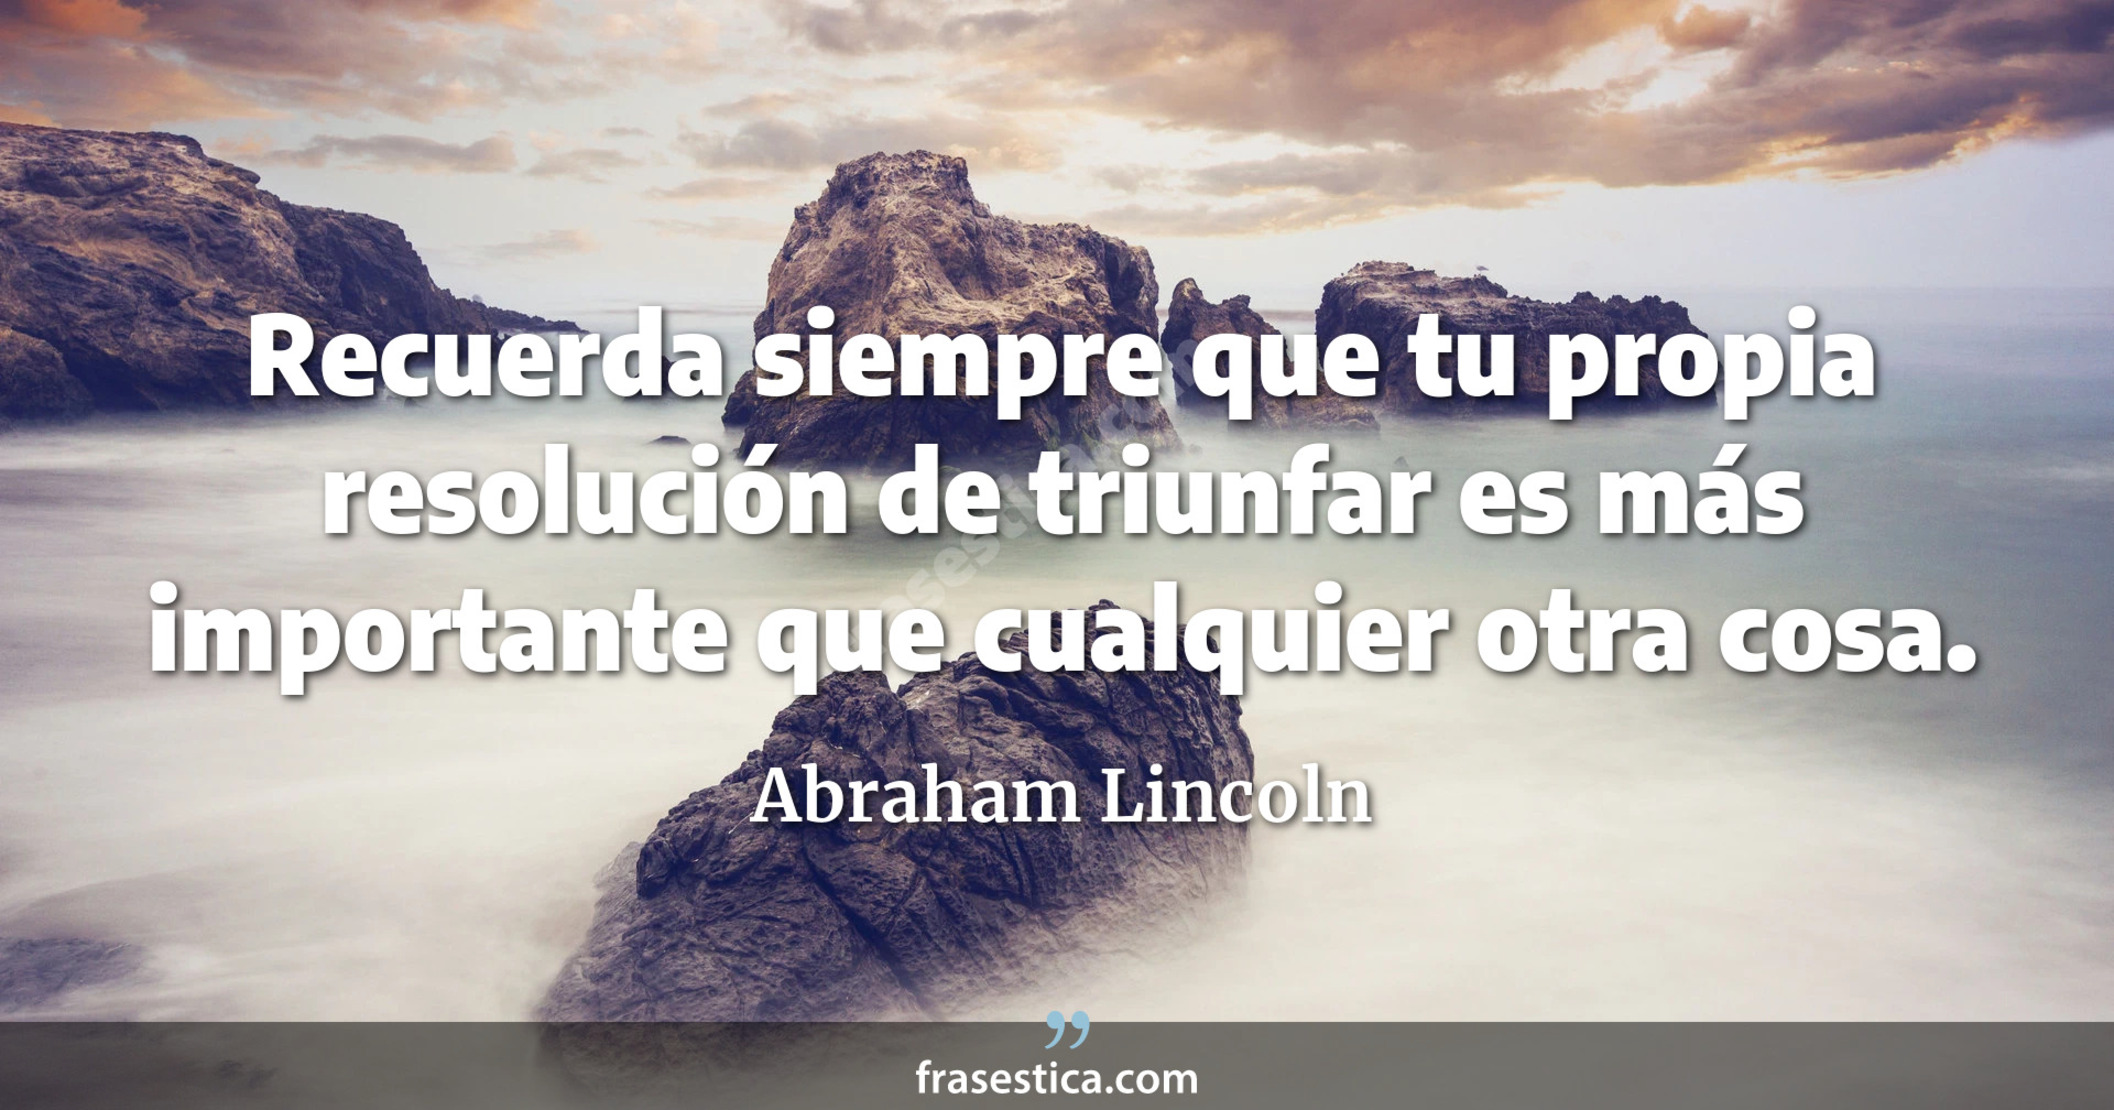 Recuerda siempre que tu propia resolución de triunfar es más importante que cualquier otra cosa. - Abraham Lincoln